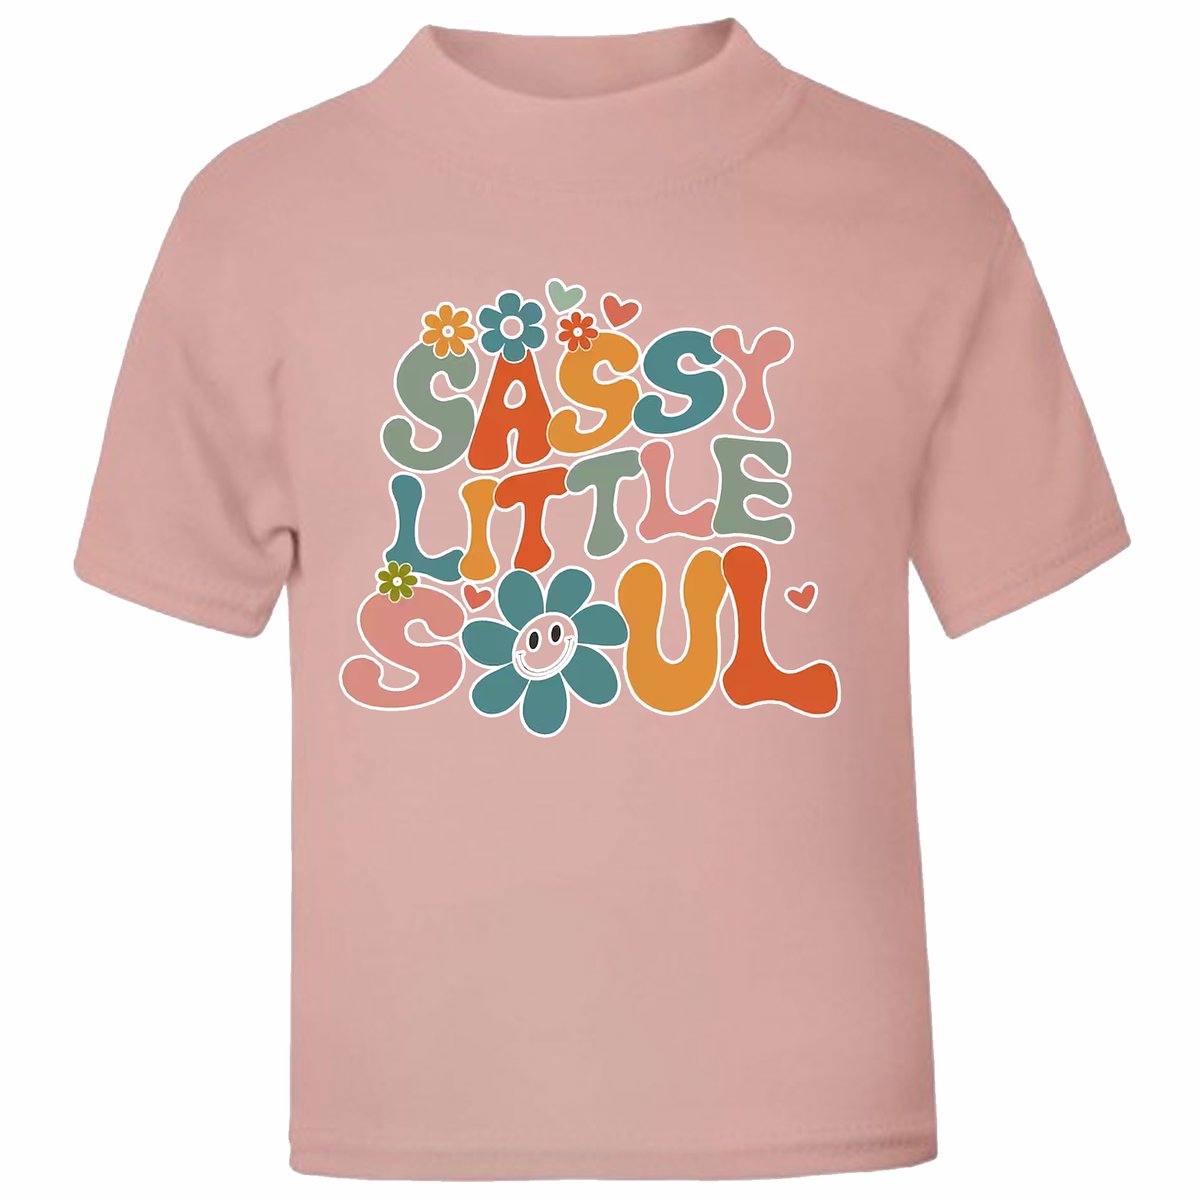 Sassy Little Soul - t-shirt - more colour options